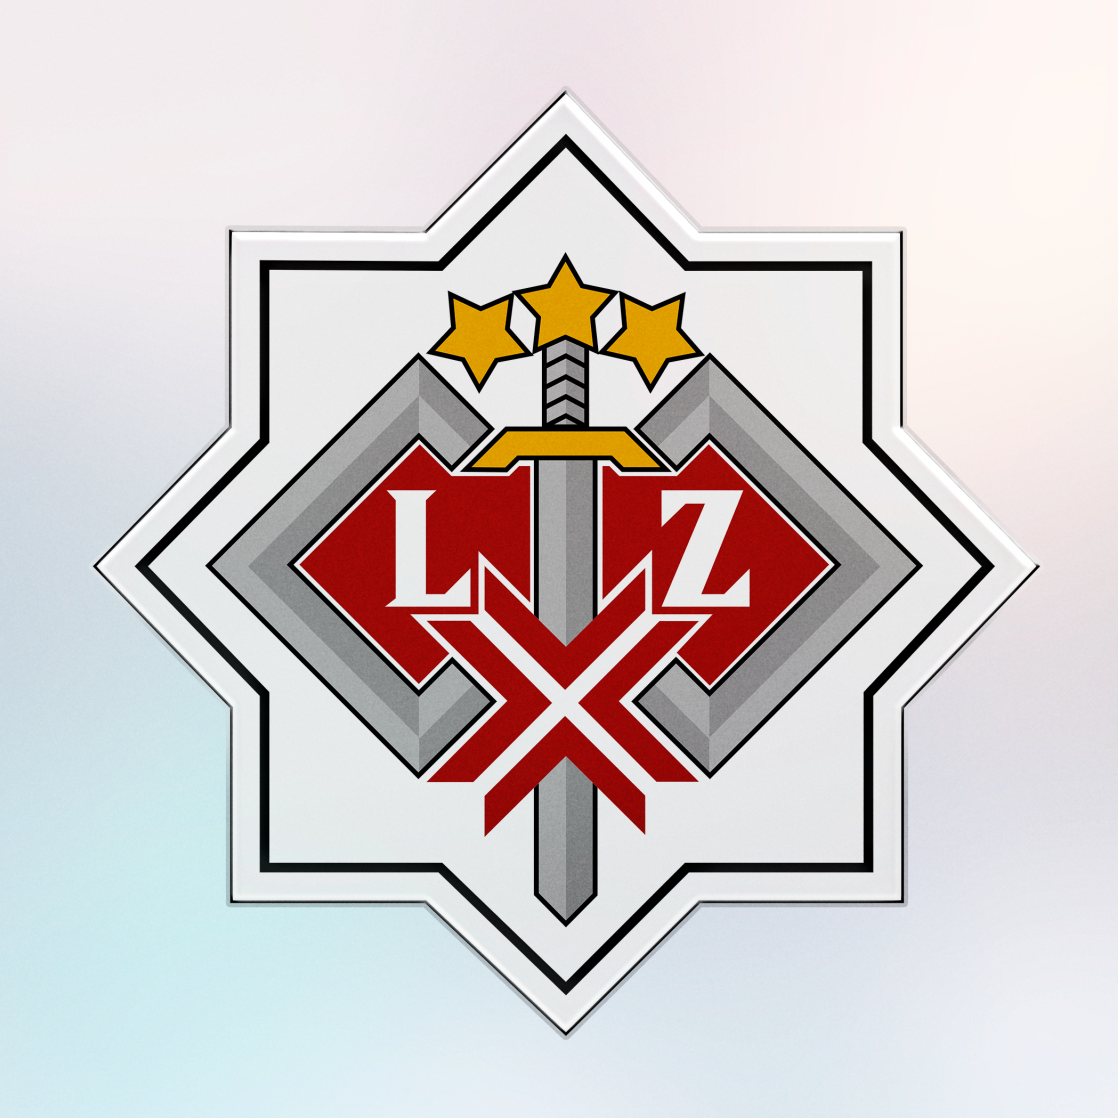 Latvijas Republikas Zemessardze emblēma ar centrālo zobenām krustotu sarkanu vairogu, burtiem 'LZ' un zelta zvaigznēm virsū uz vairāku slāņu pelēka fona.